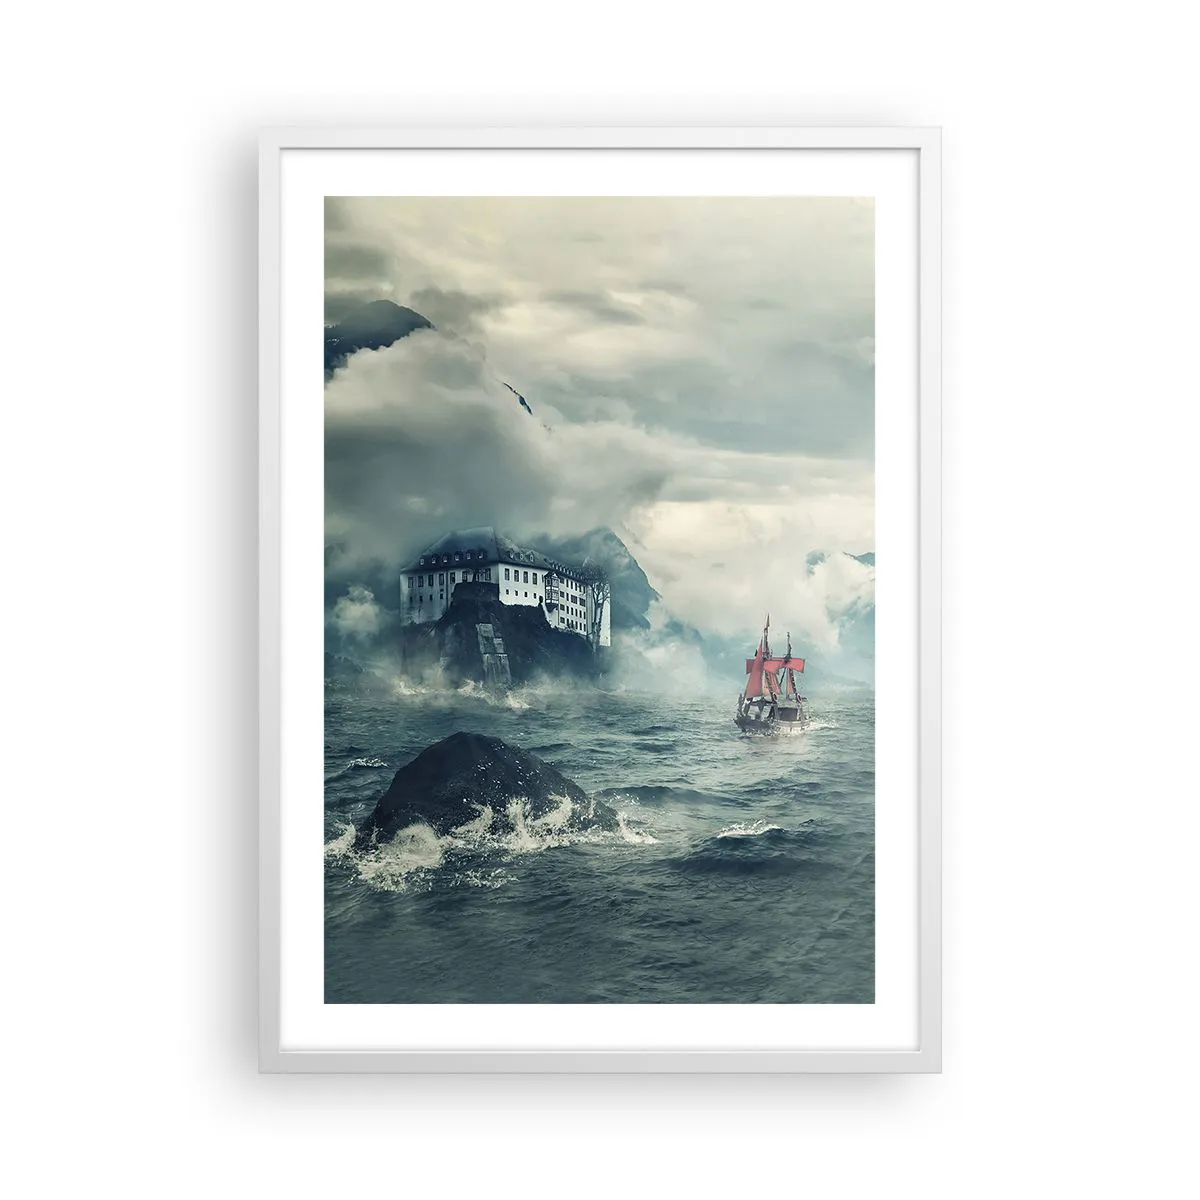 Poster in cornice bianca 50x70 cm - Sulle acque magiche - Arttor